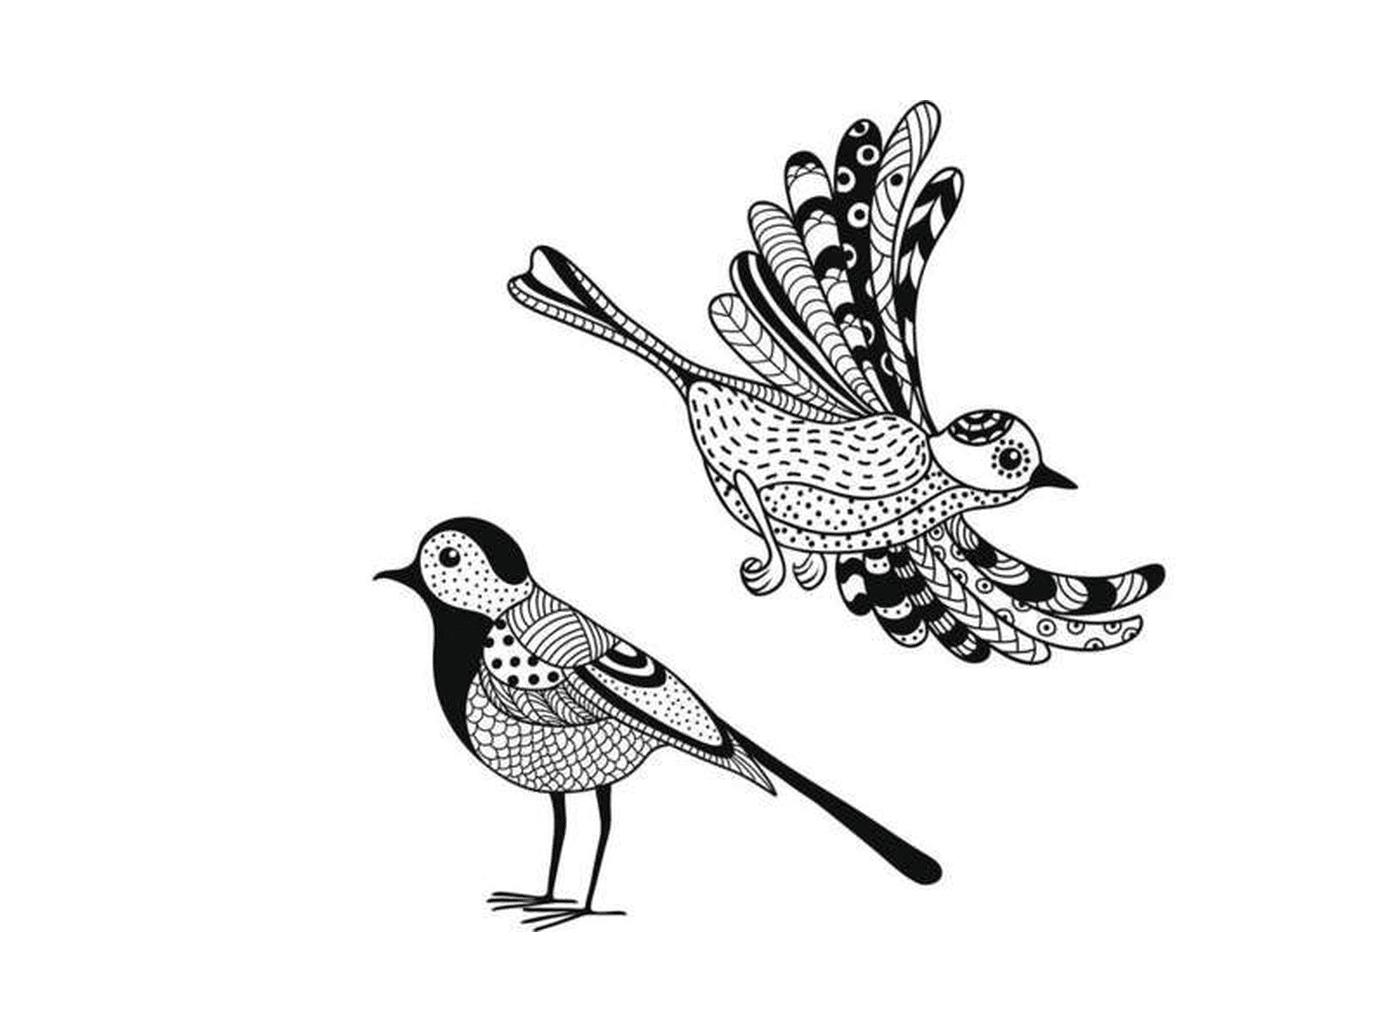   deux dessins en noir et blanc d'un oiseau 